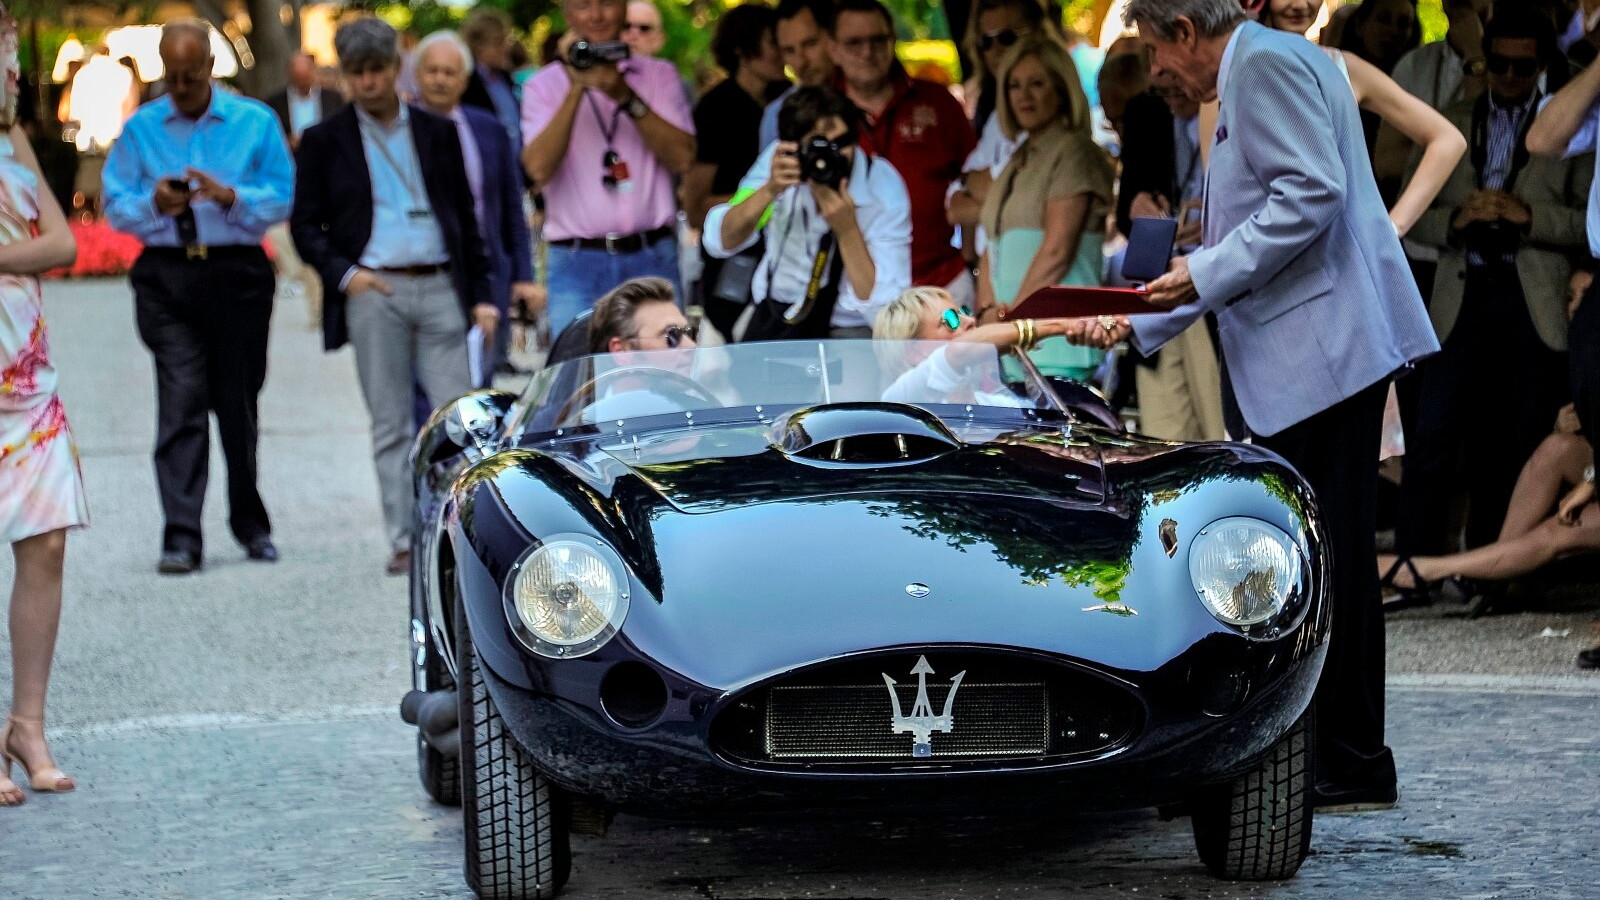 1956 Maserati 450S at the Concorso d’Eleganza Villa d'Este 2014